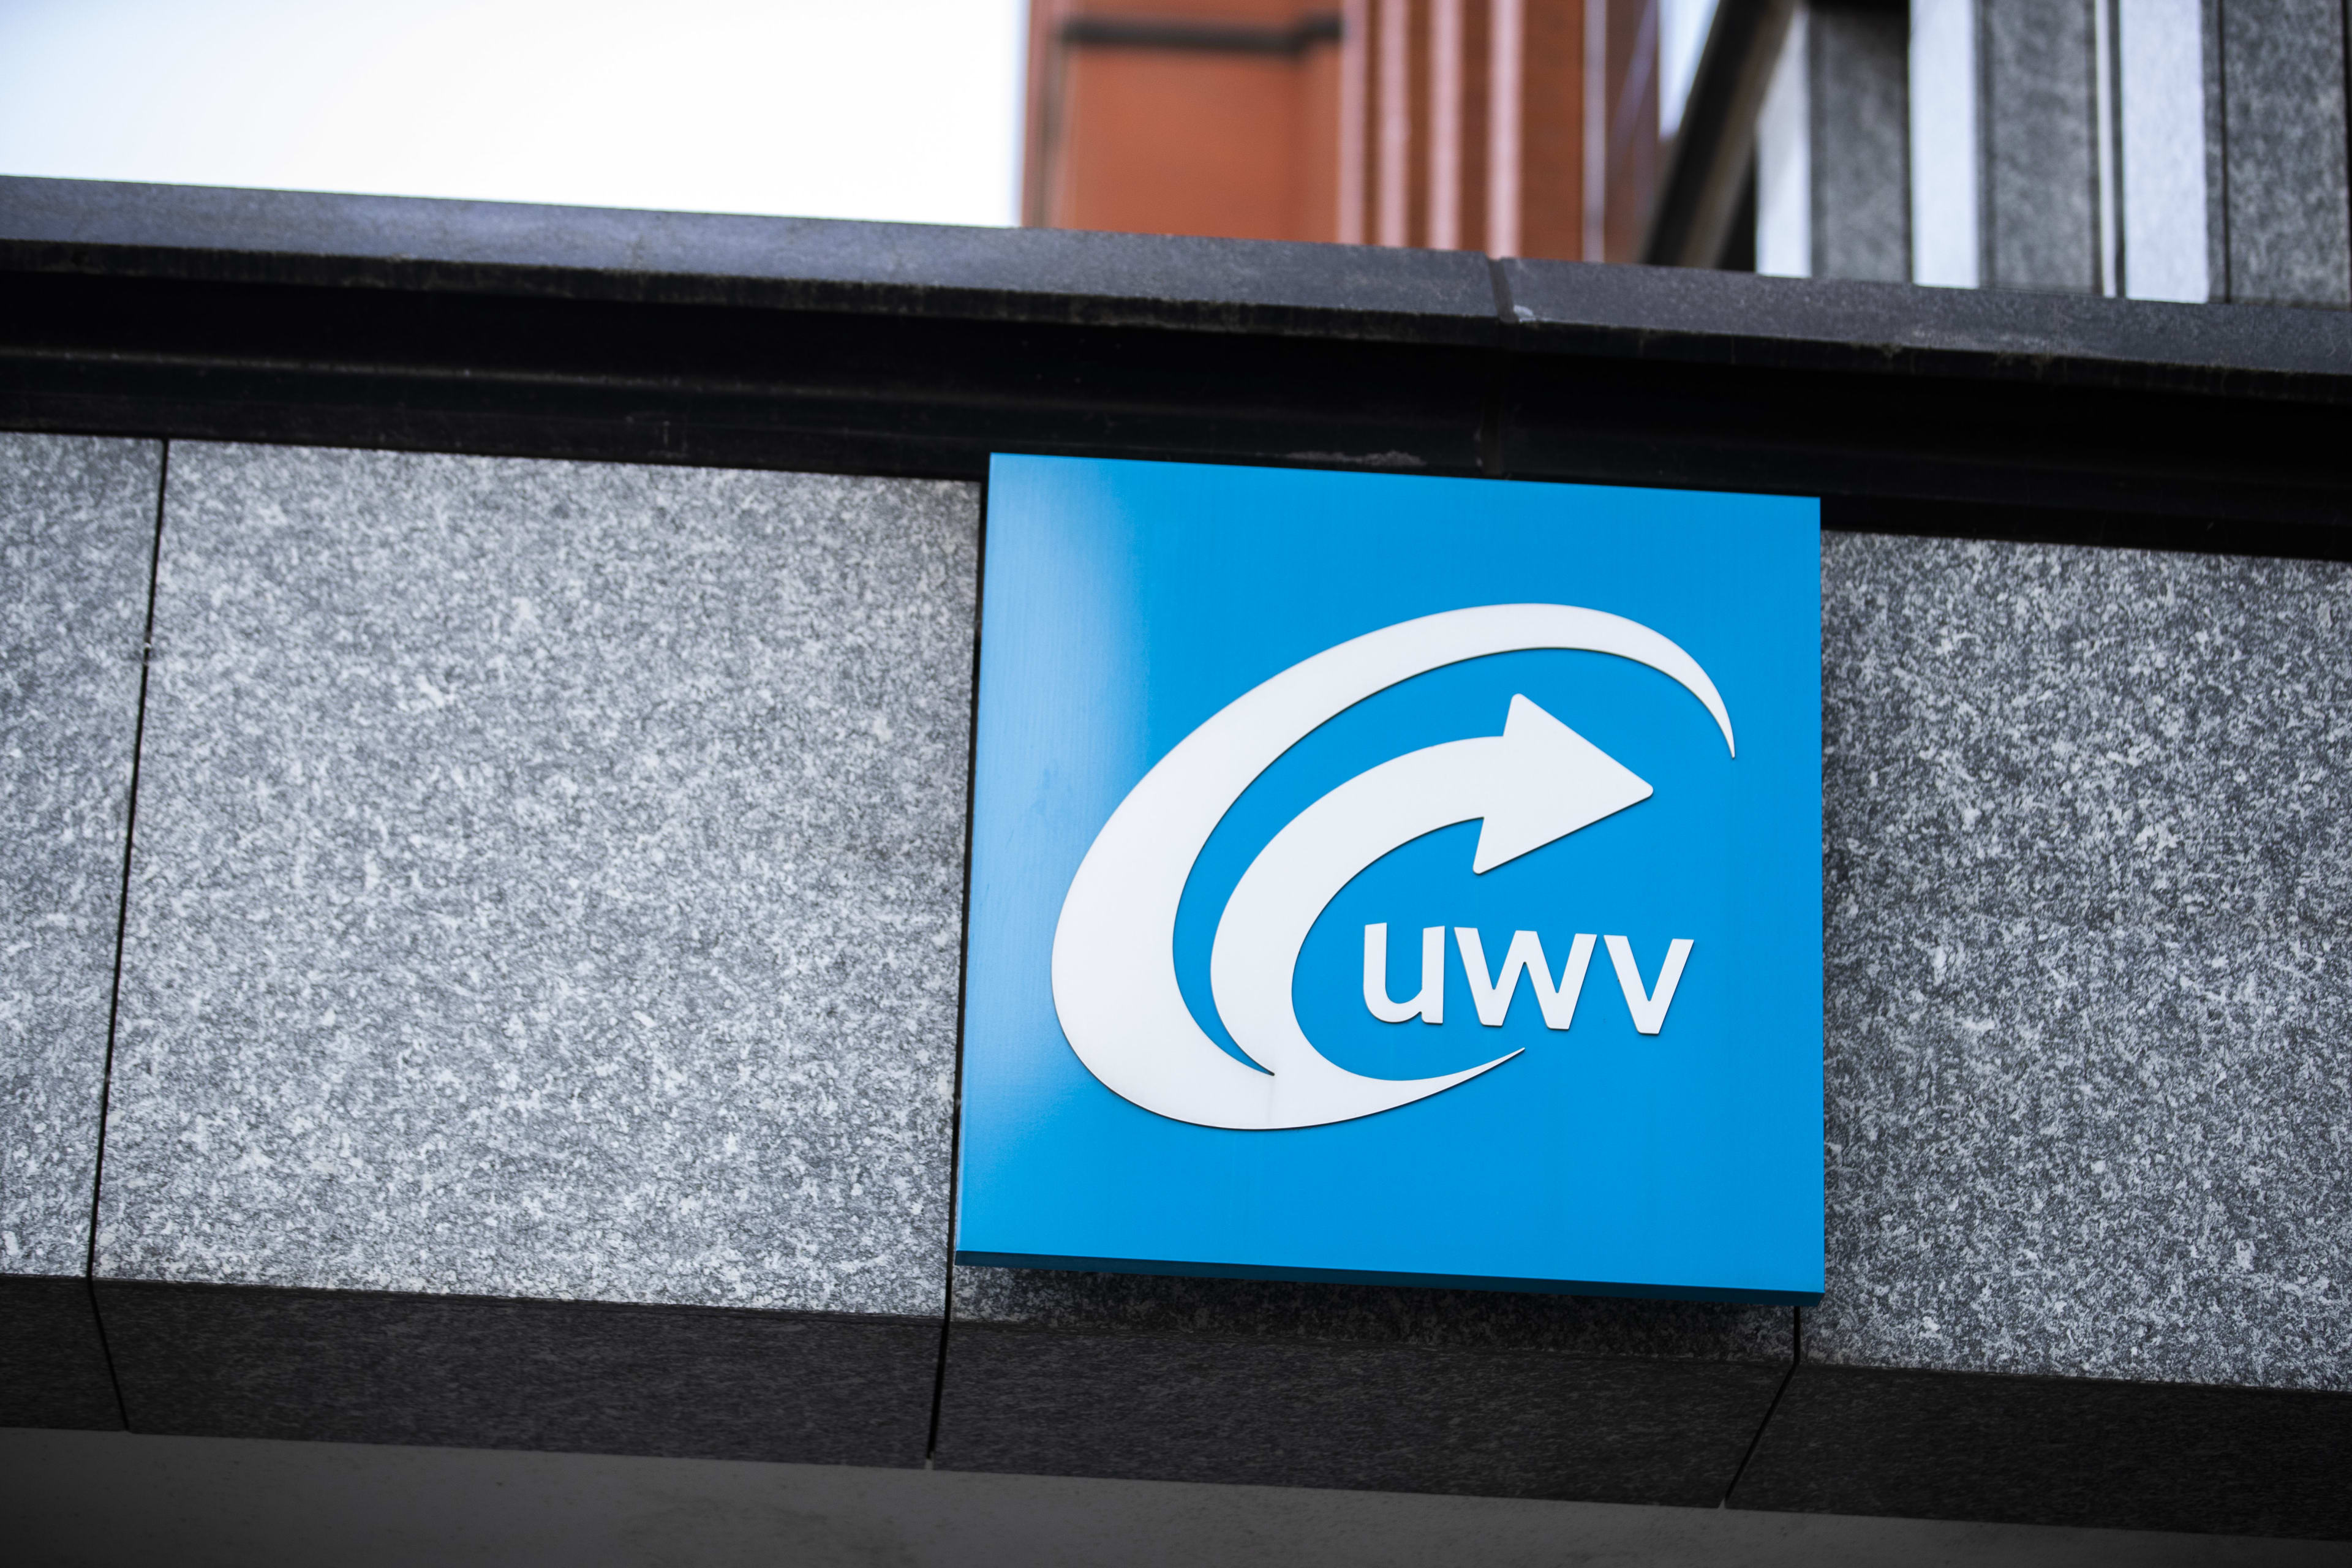 Honderden boetes teruggedraaid door UWV vanwege omstreden risicoscan